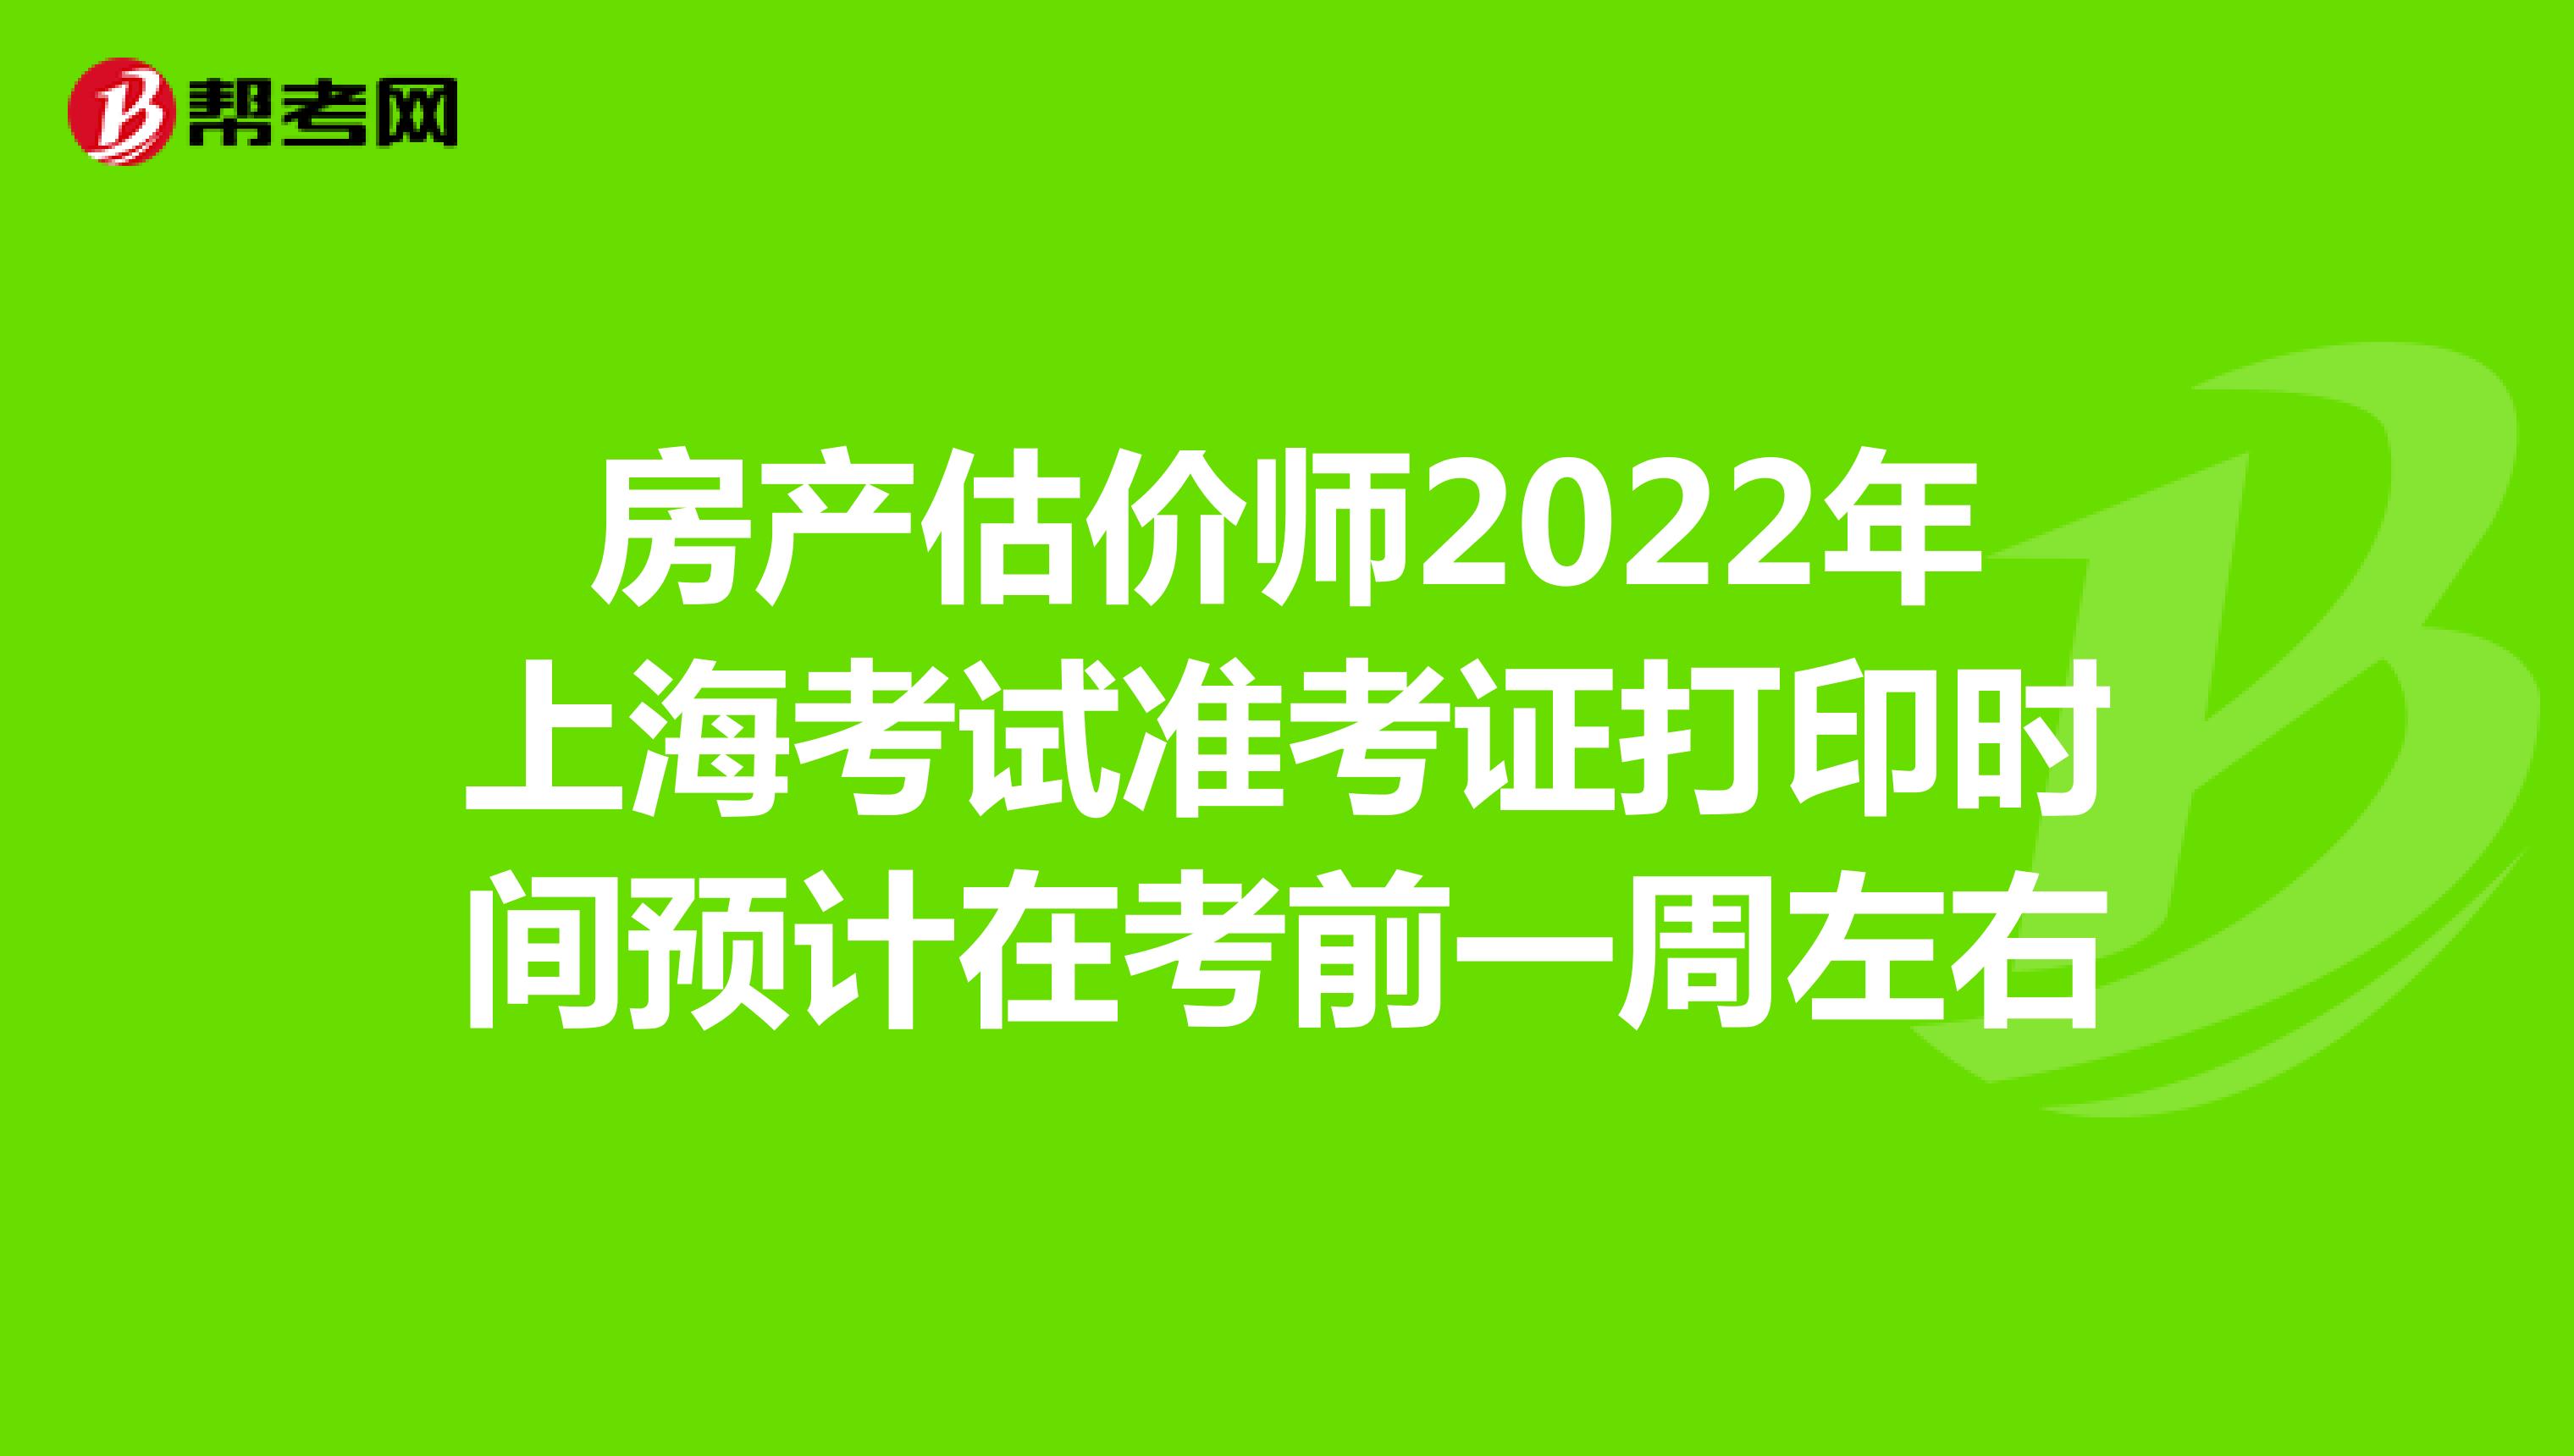 房产估价师2022年上海考试准考证打印时间预计在考前一周左右